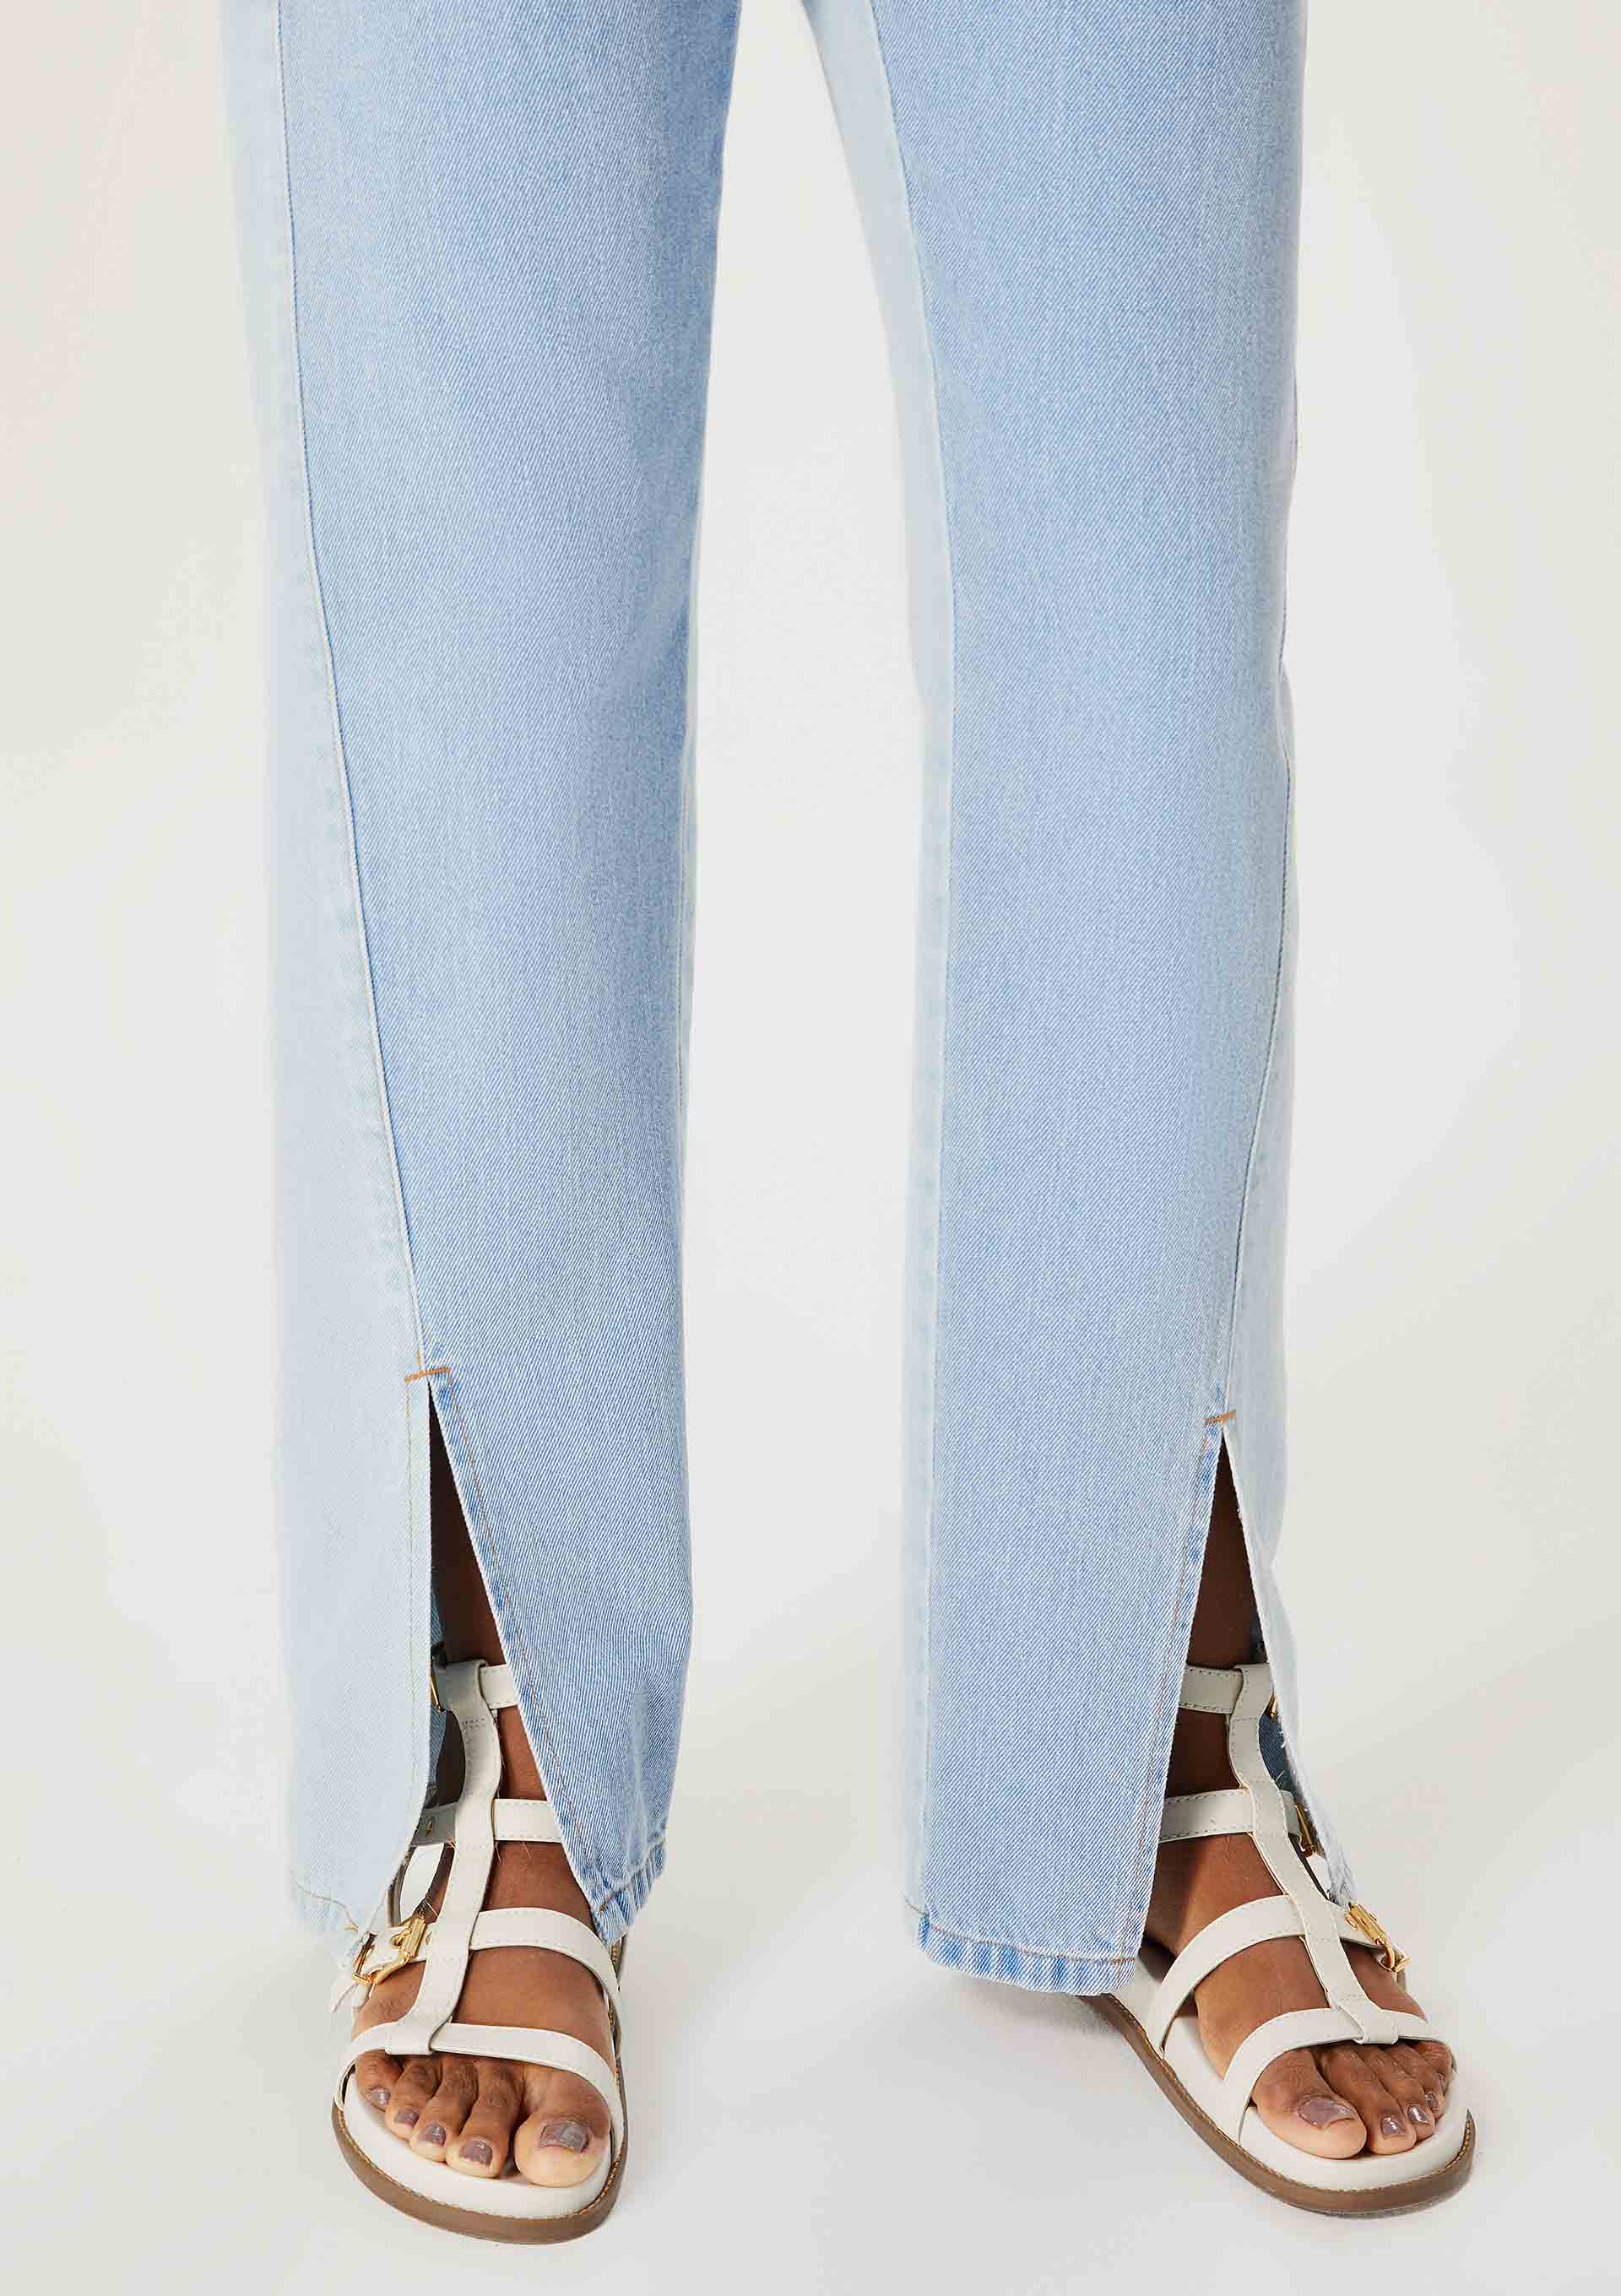 Calça Jeans Cintura Alta F2021041